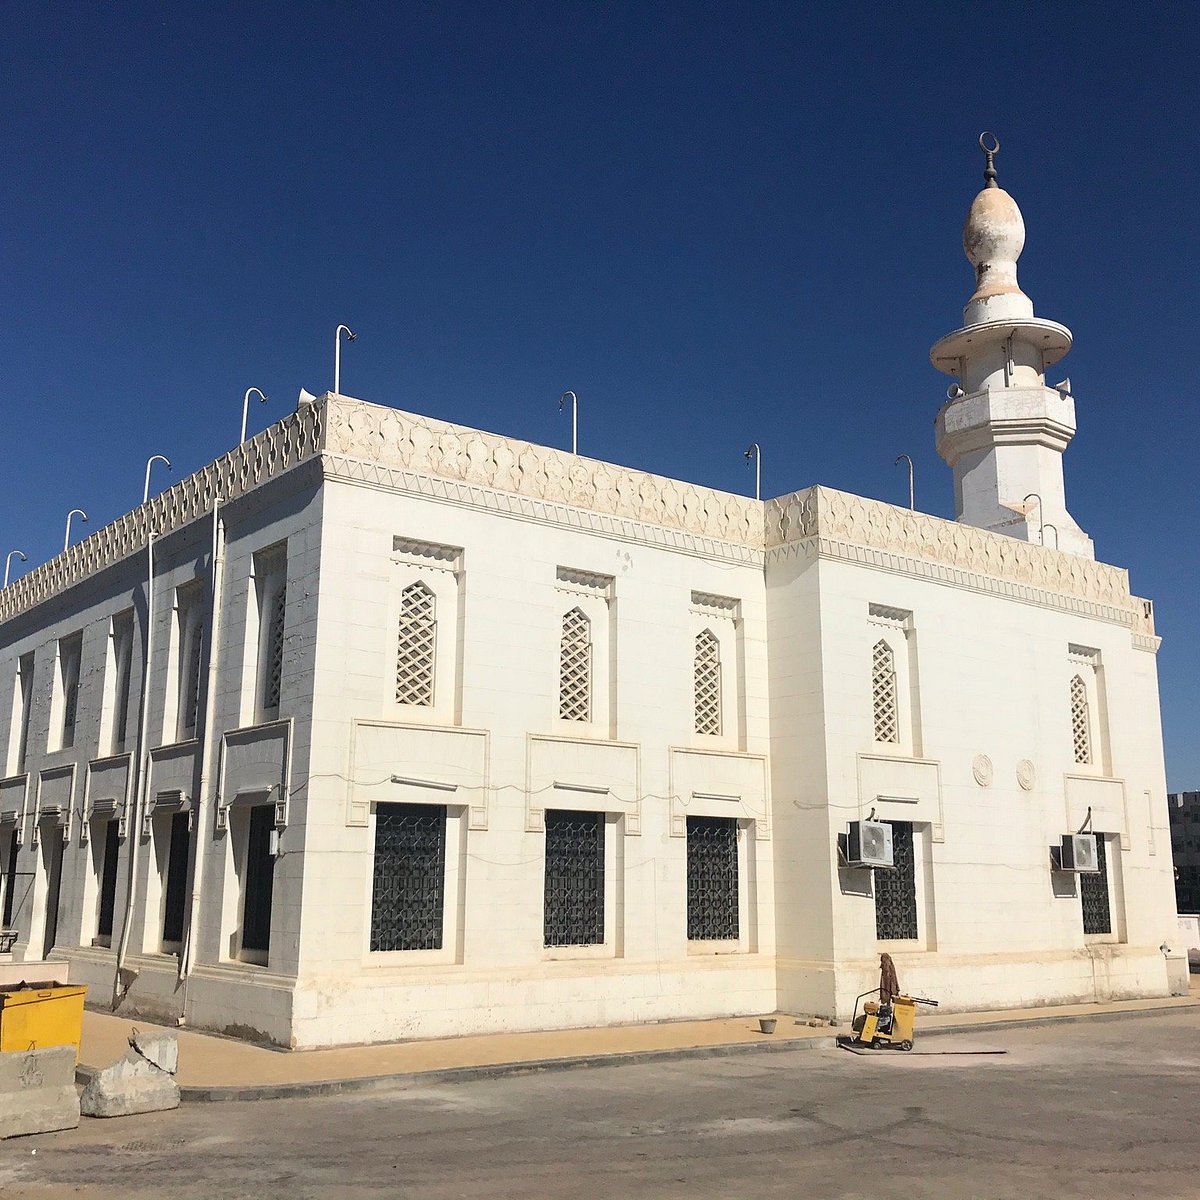 مسجد التوبة, Tabouk: лучшие советы перед поснием - Tripadvisor